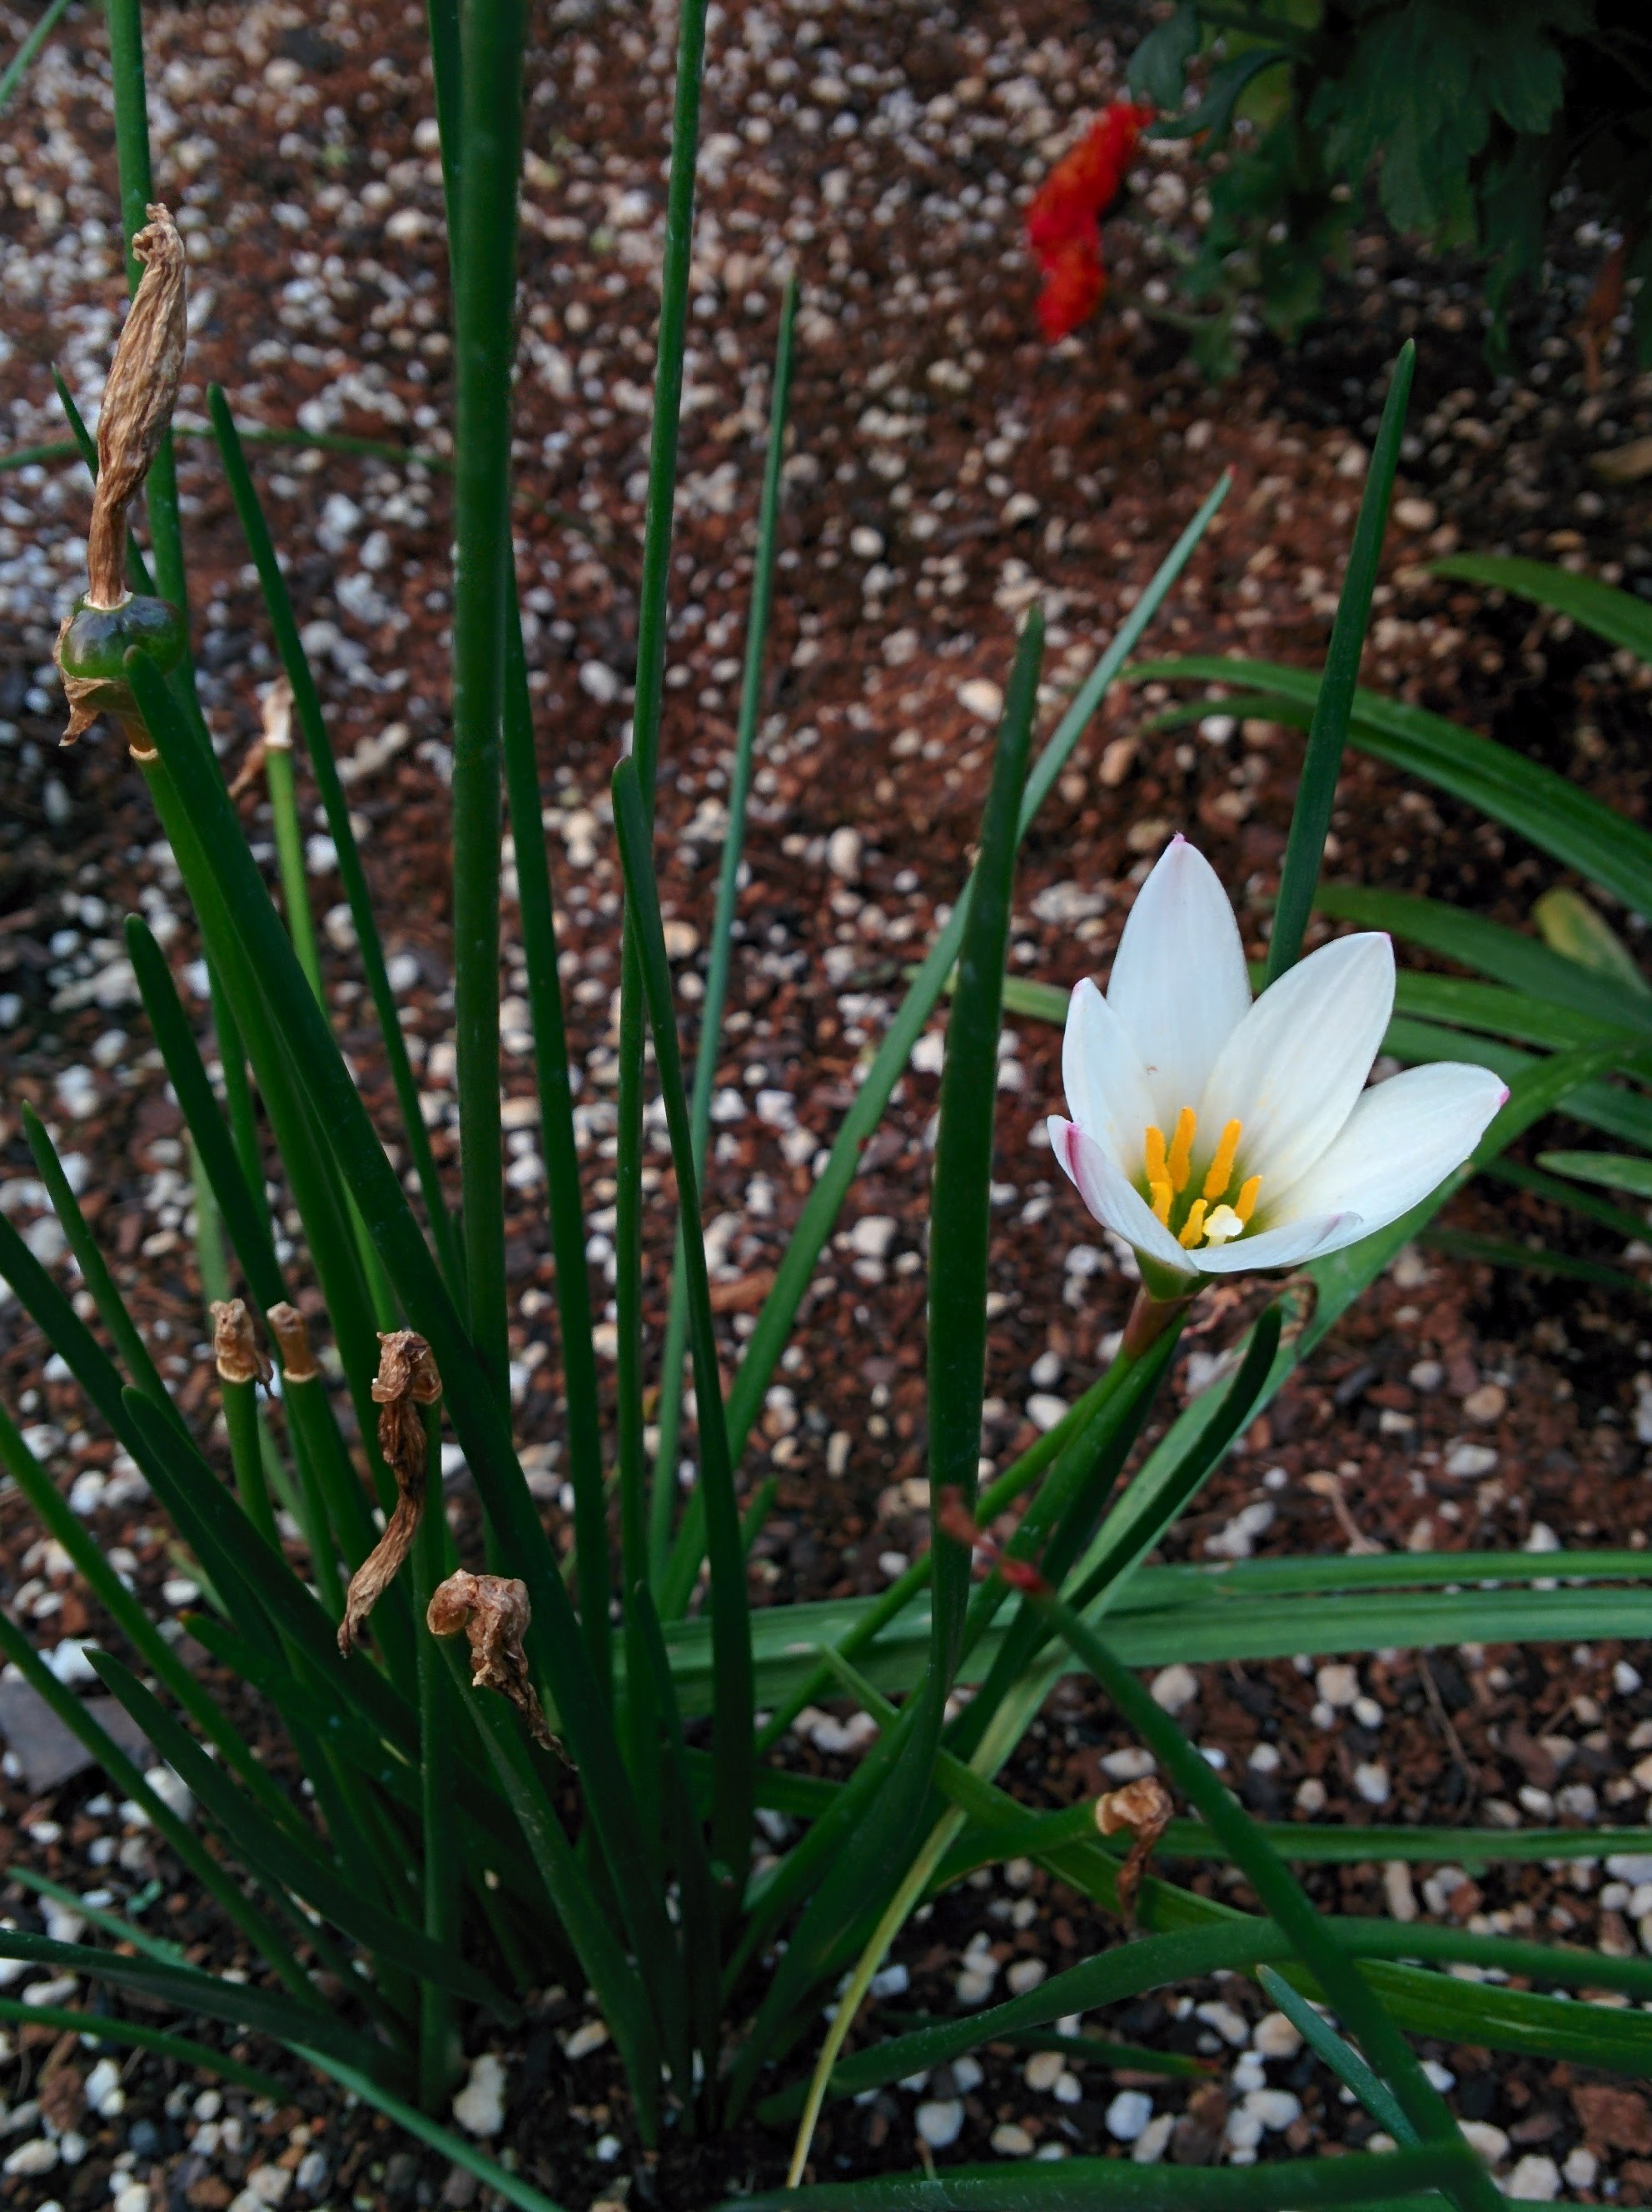 IMG_20151008_171747.jpg 과기원 울타리 작은 화단의 나도샤프란 열매와 흰색 꽃